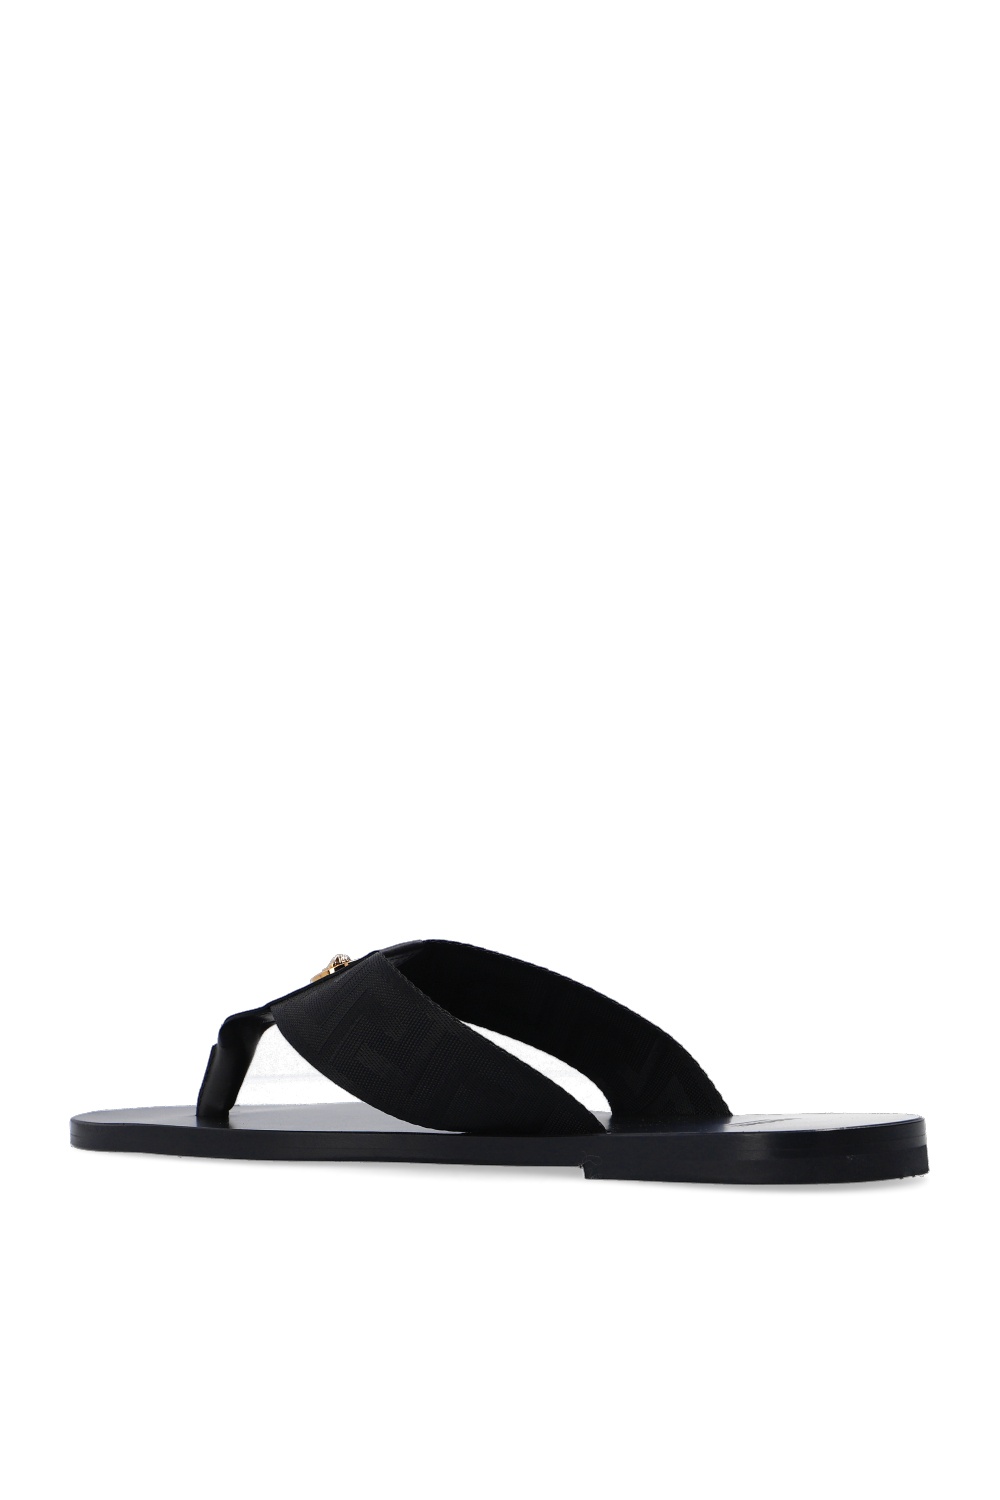 versace black flip flops